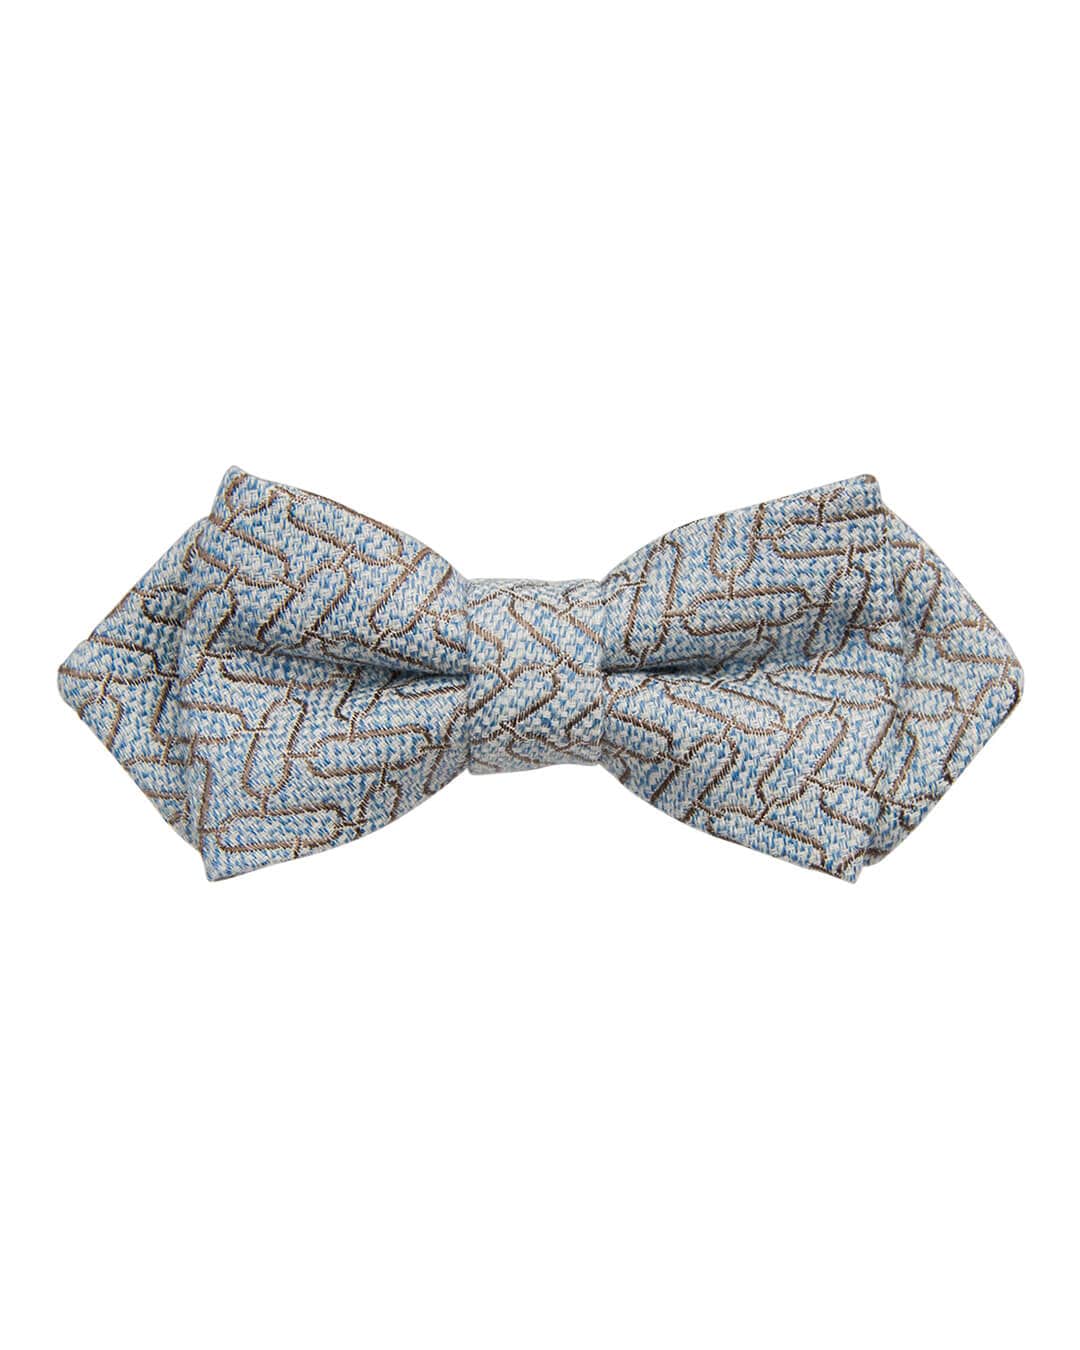 Gagliardi Bow Ties Gagliardi Sky With Taupe Geometric Design Bow Tie